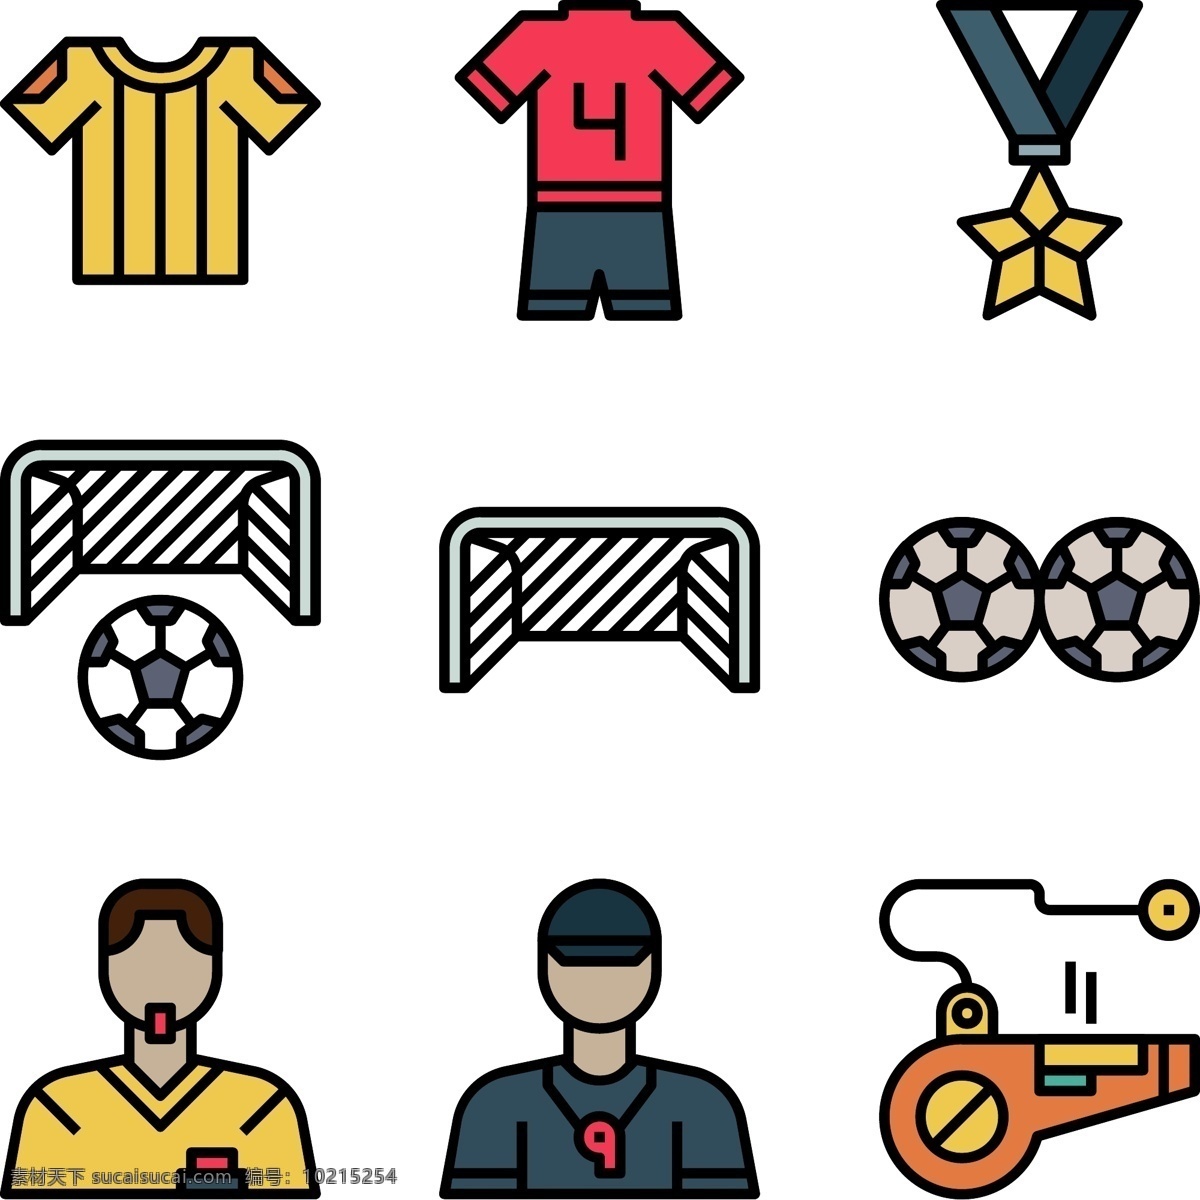 俄罗斯 世界杯 黑 边框 卡 通风 足球 矢量 图标 2018 欧冠 矢量足球 冠军 教练 球队 足球装饰 装饰图案 矢量装饰 足球风